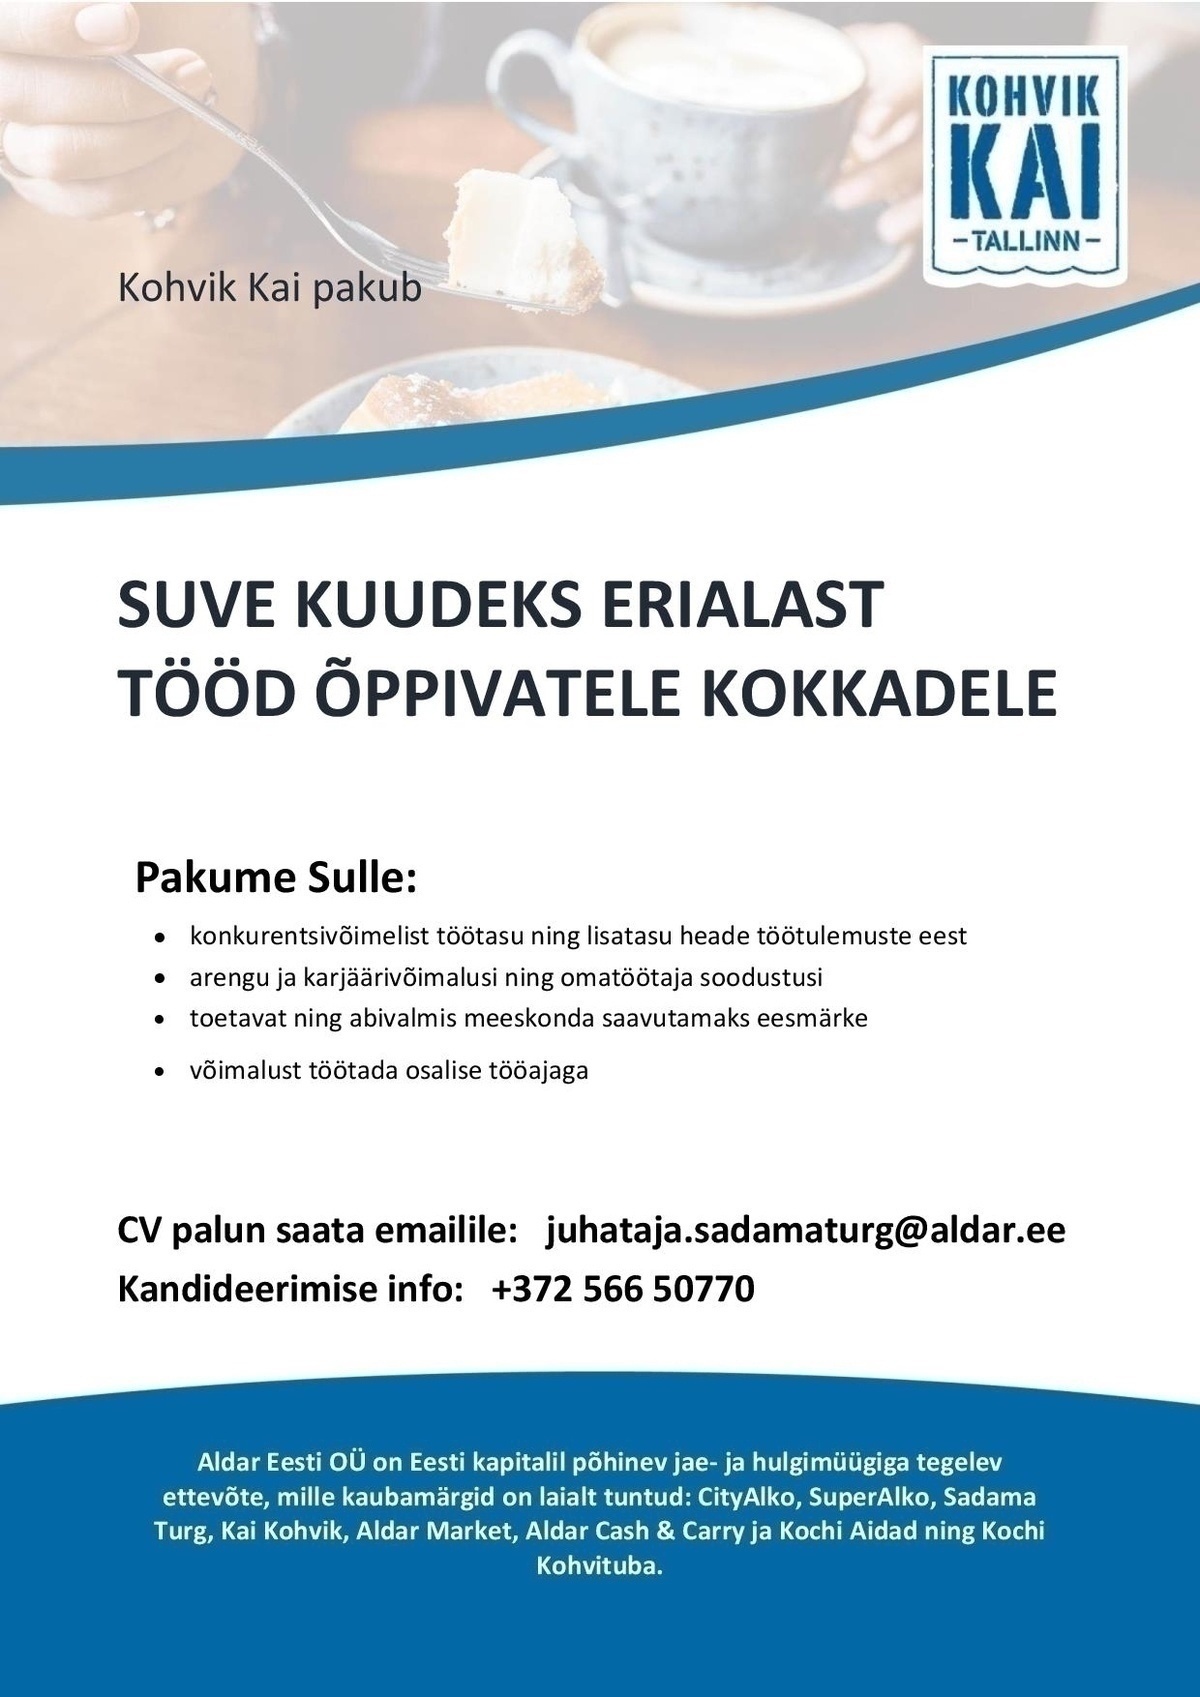 OÜ Aldar Eesti Suvetöötaja-Kokk Kai Kohvikus